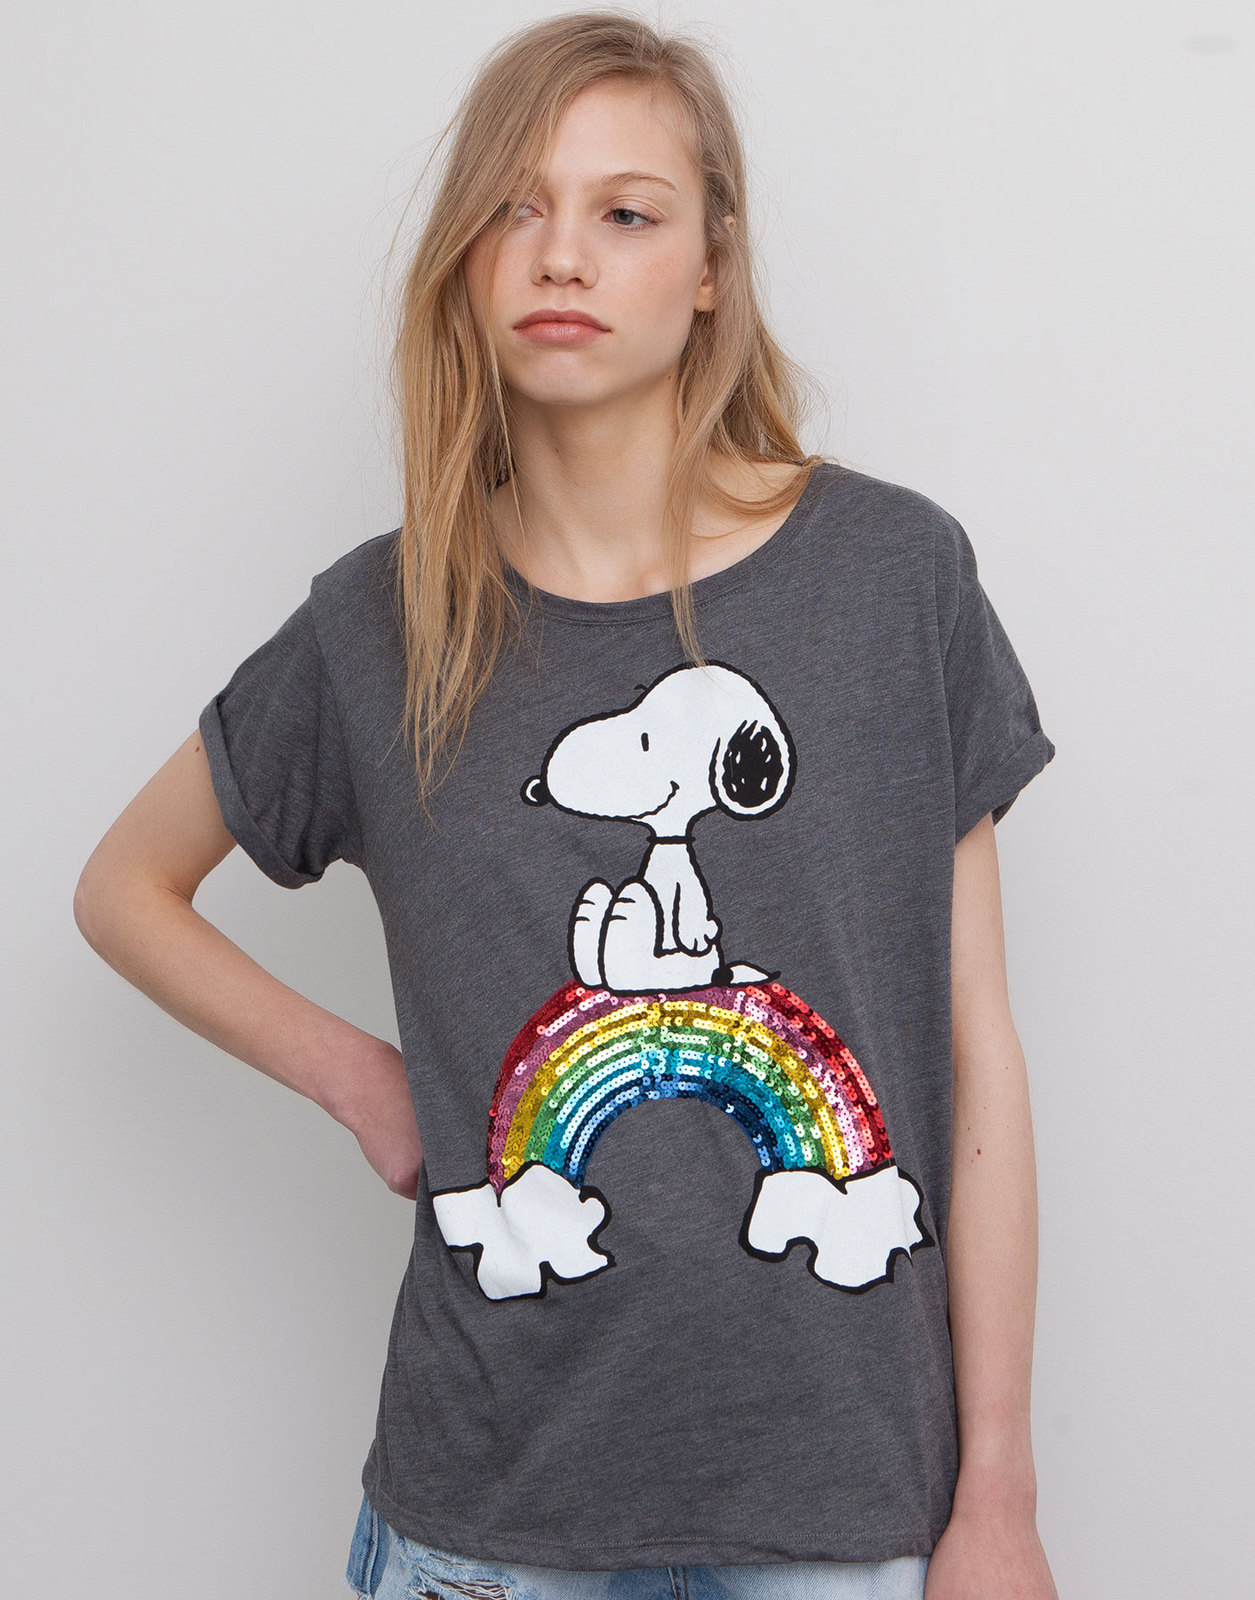 Pull and Bear flitteres szivárványos Snoopy póló fotója